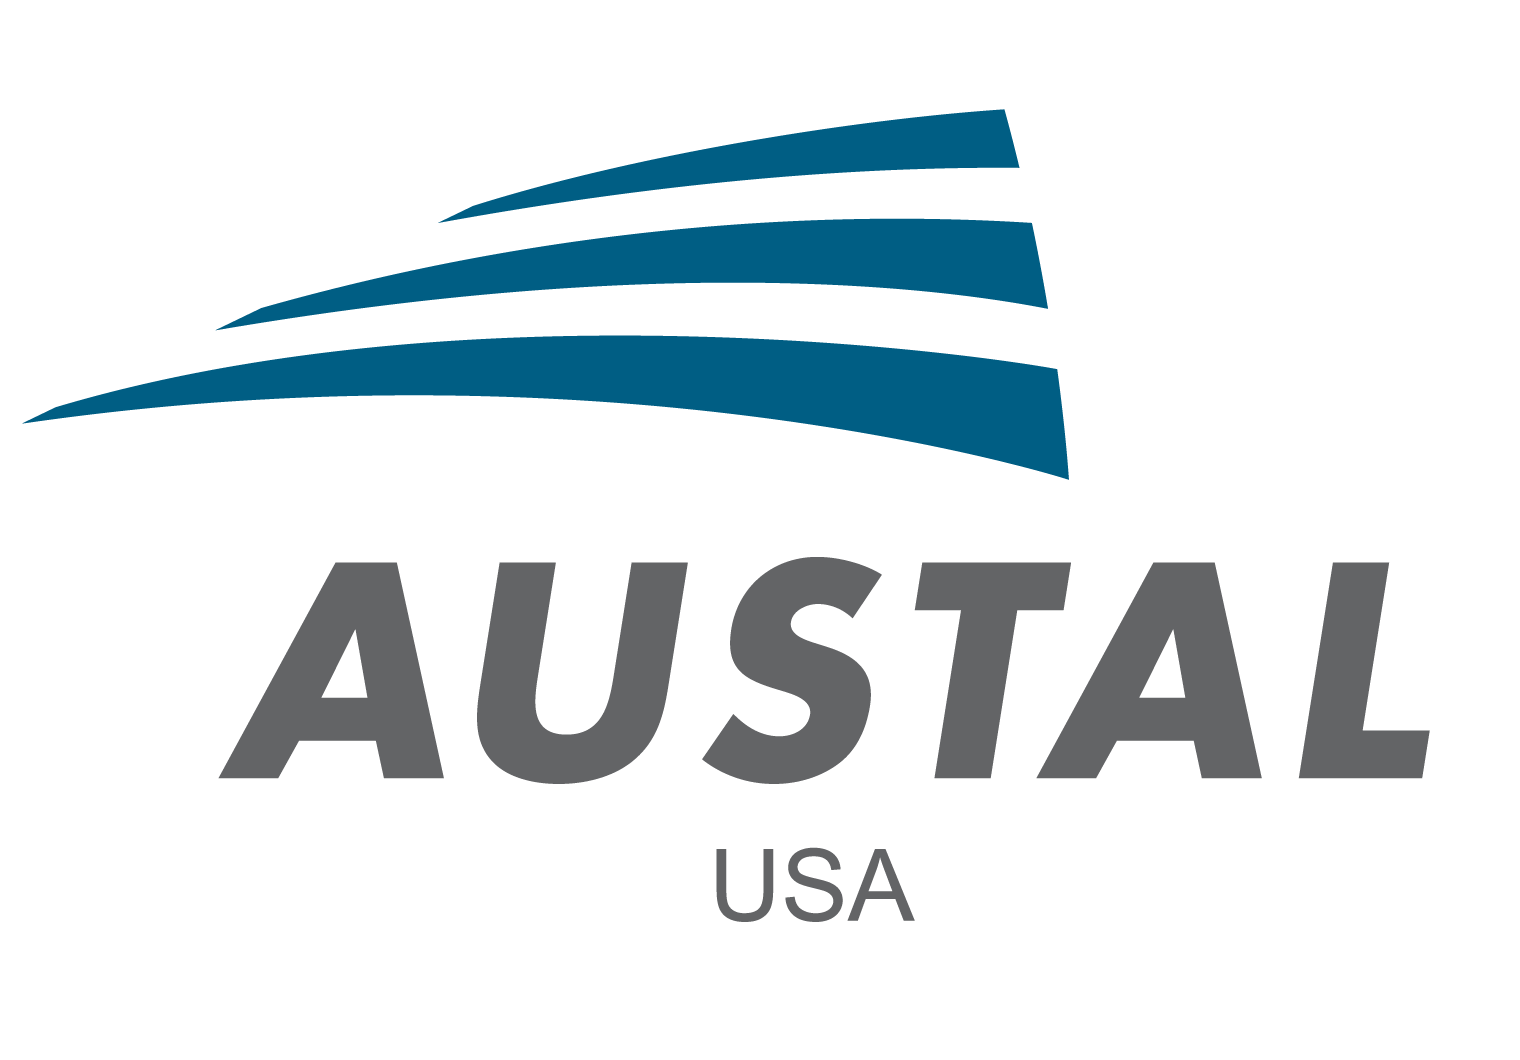 Austal USA awarded $